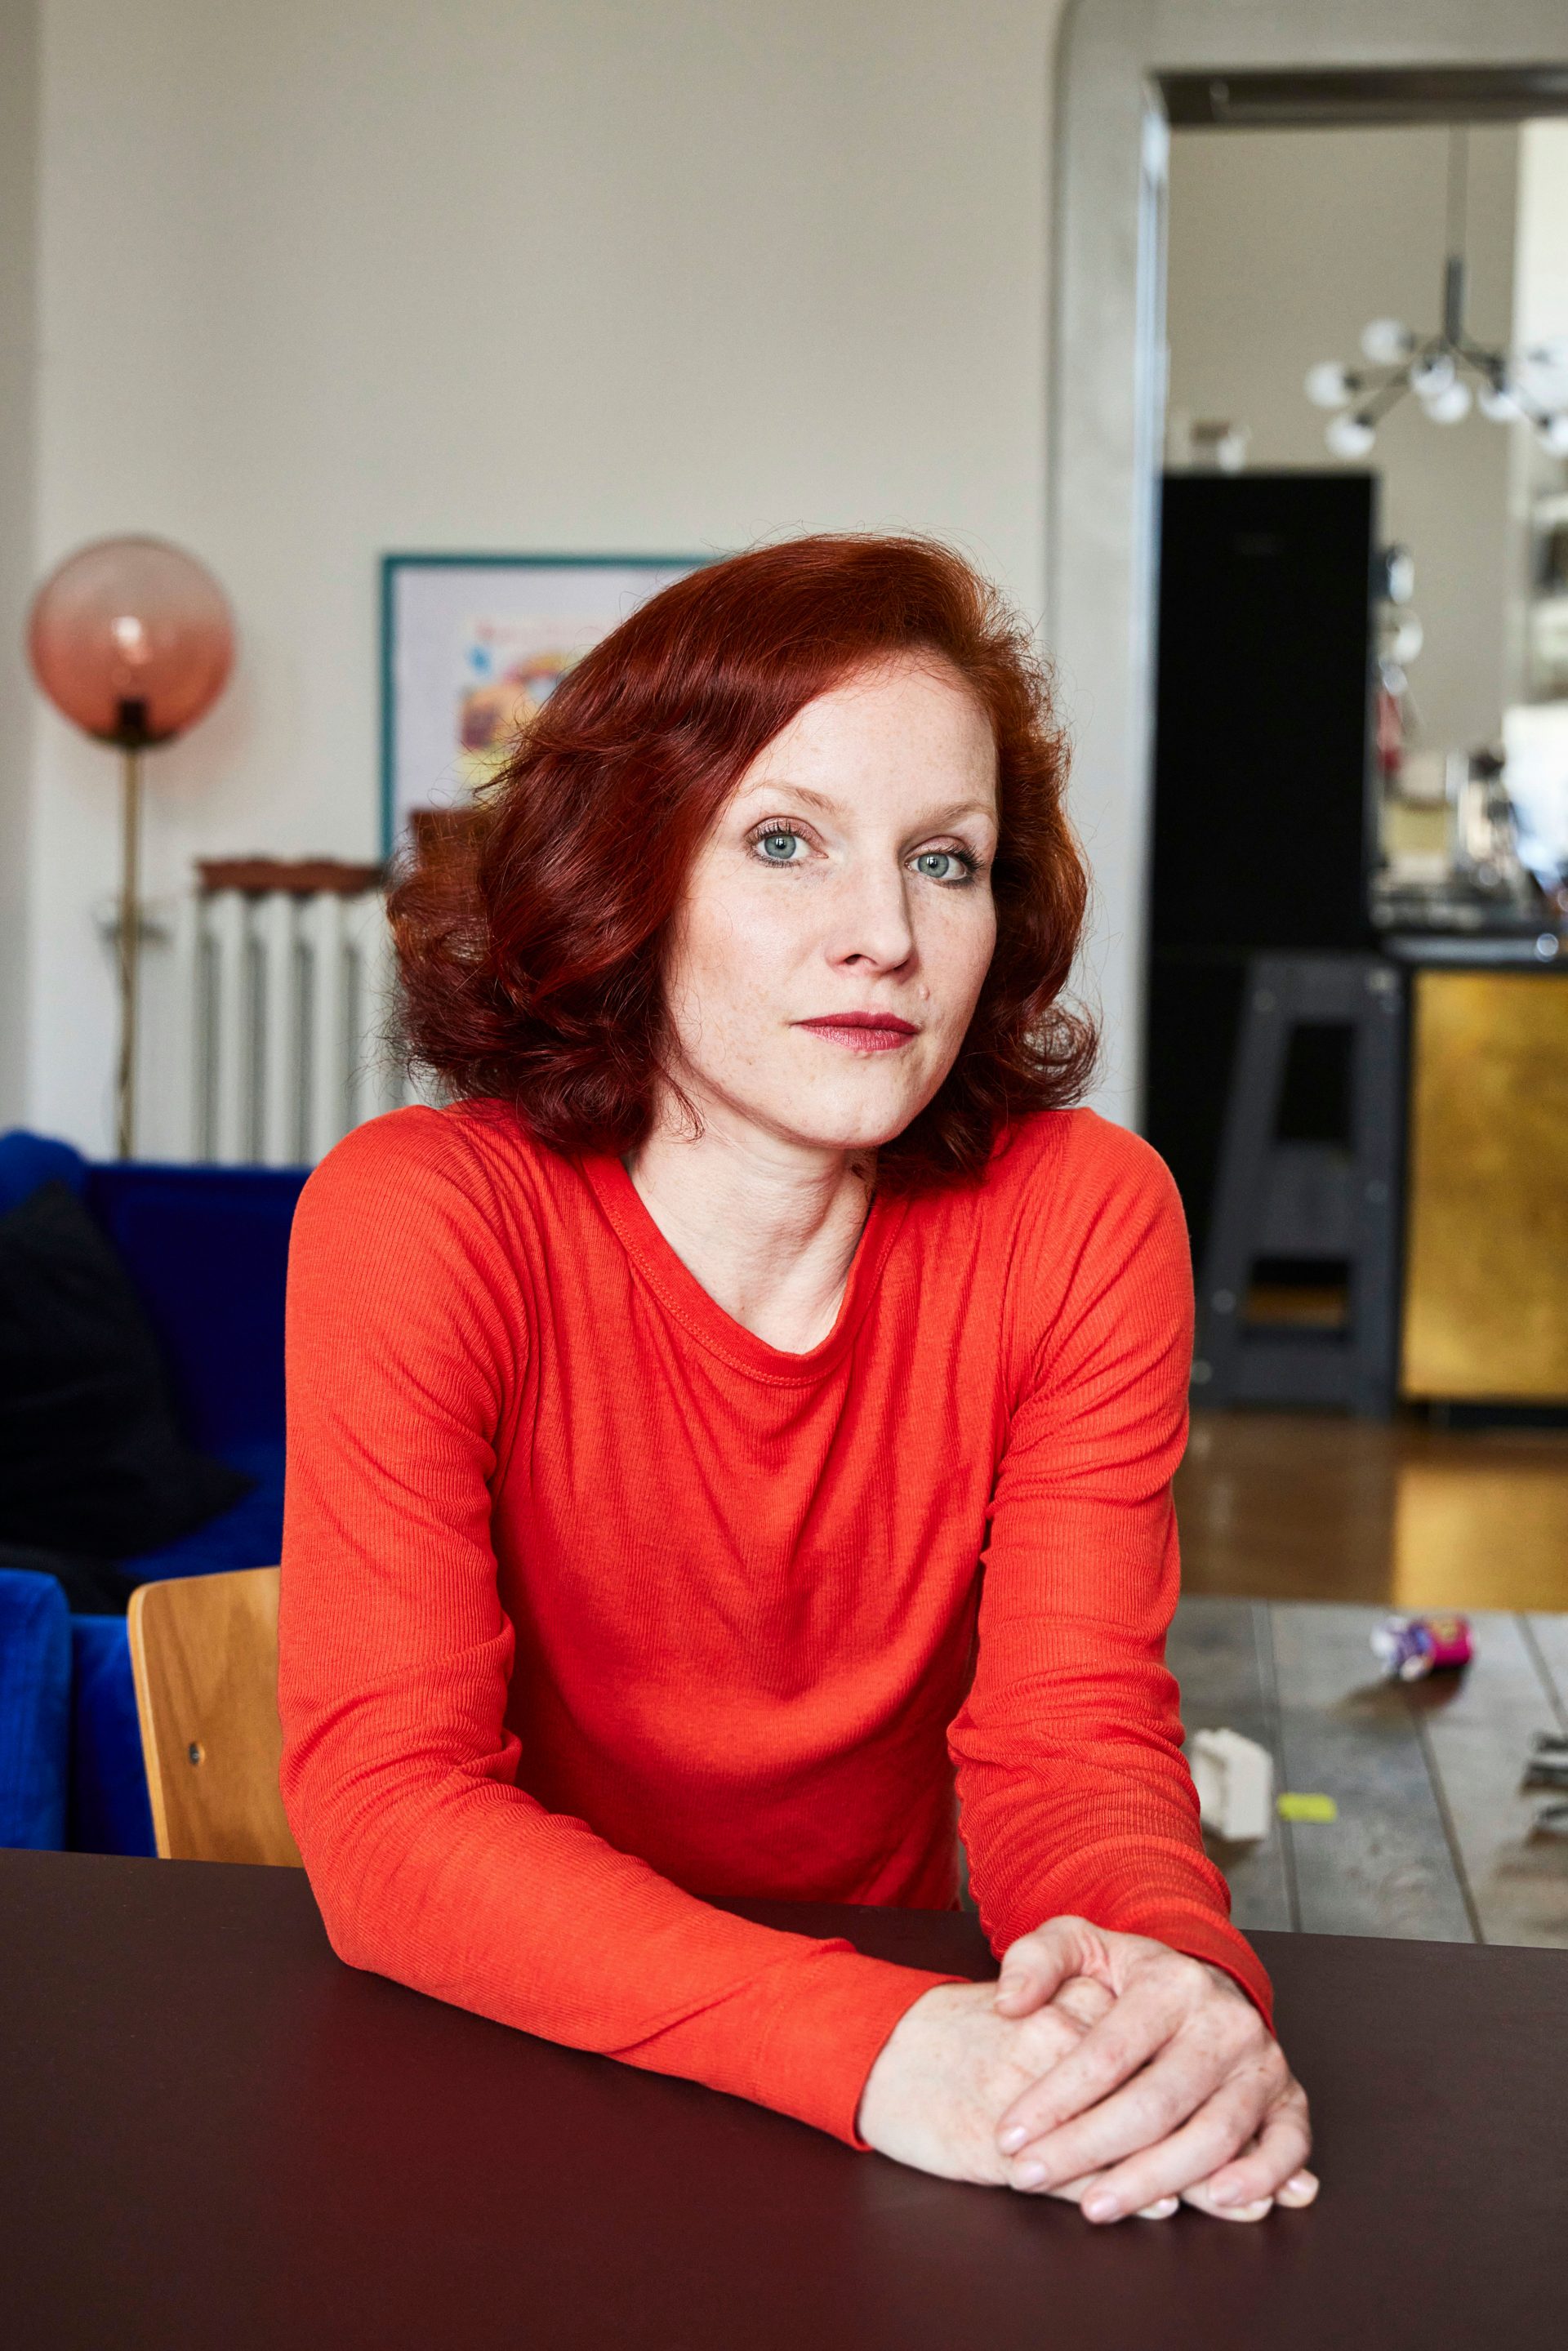  Teresa Bücker, Autorin, Bloggerin in ihrer Wohnung in Berlin Steglitz (Portraits)